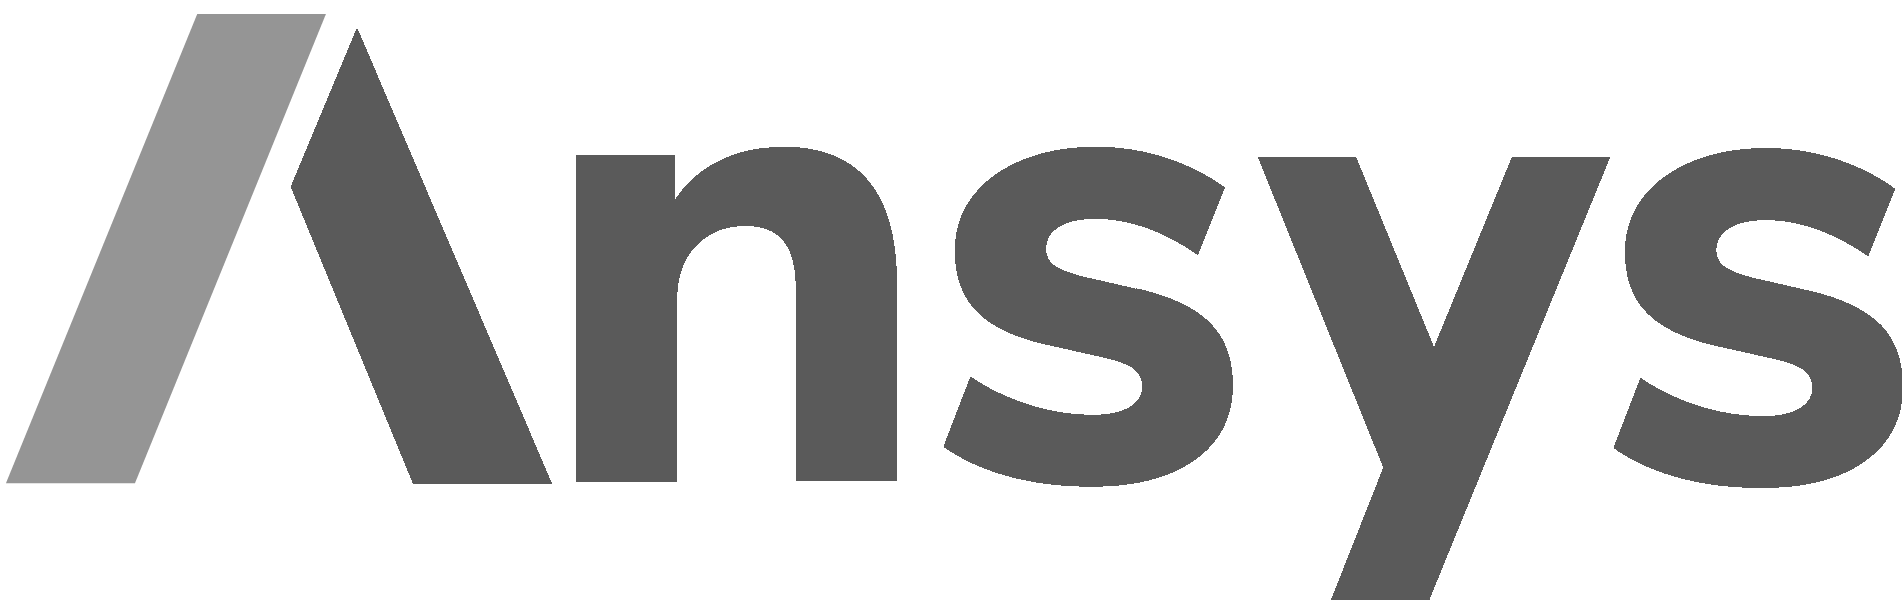 Ansys_logo_2019-1 (1)